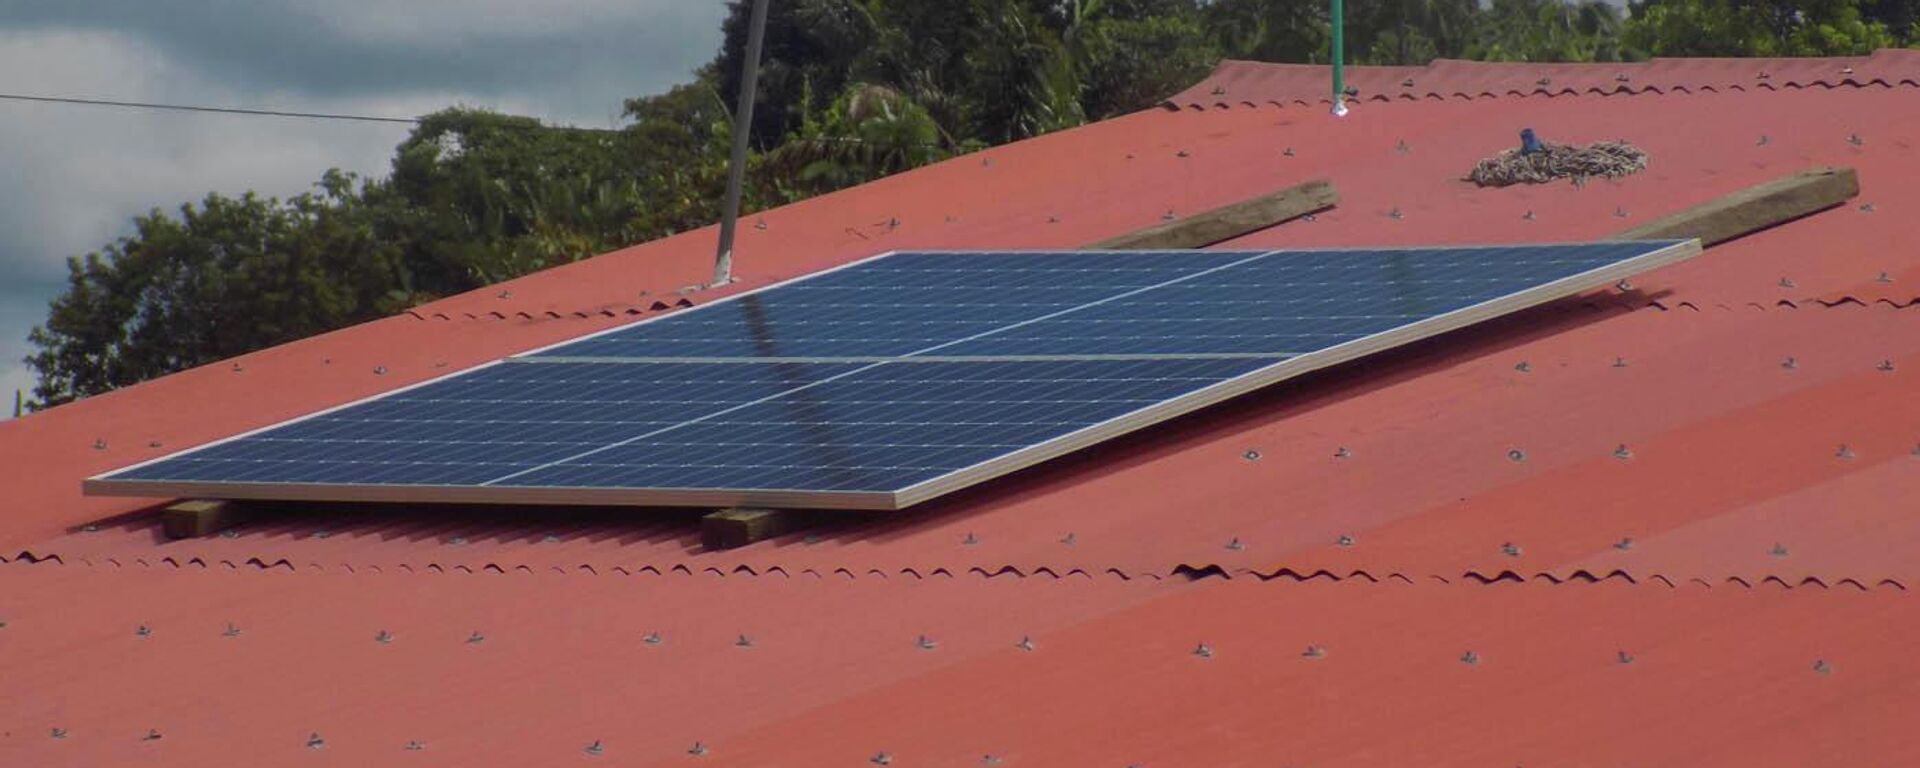 El proyecto de energía solar que abastece a excombatientes de las FARC en Colombia - Sputnik Mundo, 1920, 03.09.2022